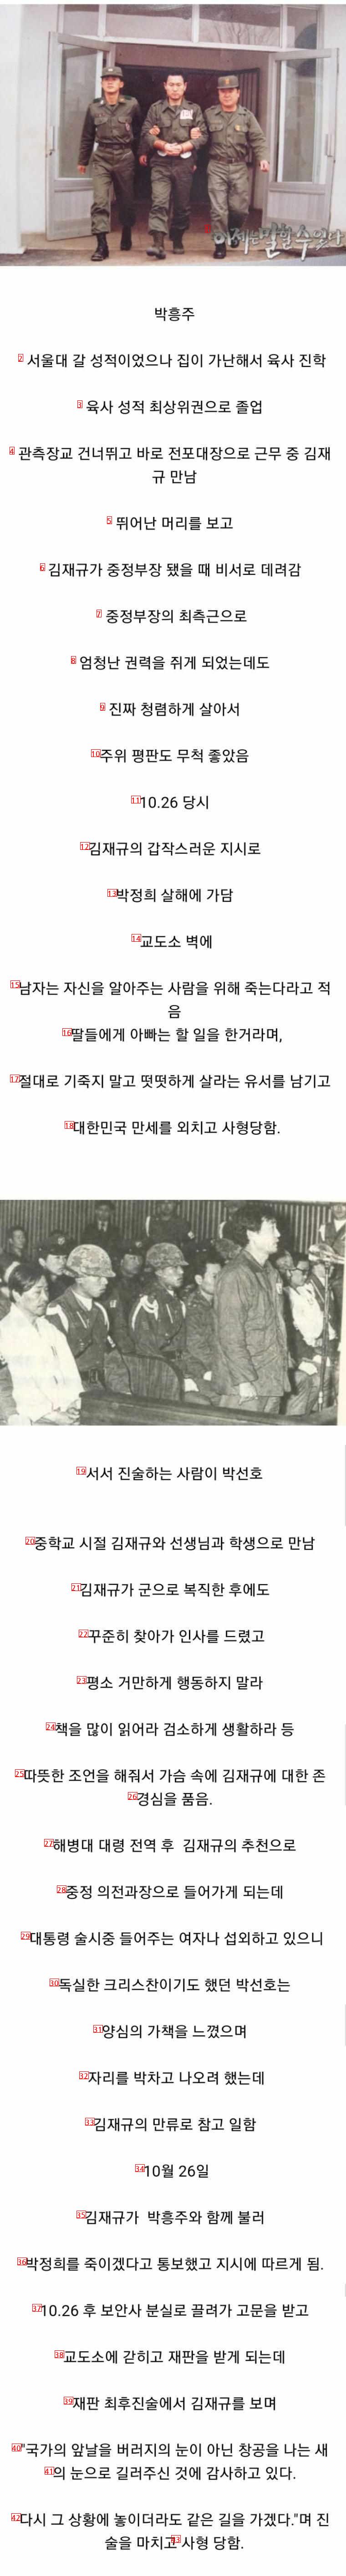 김재규와 같이 사형된 사람들